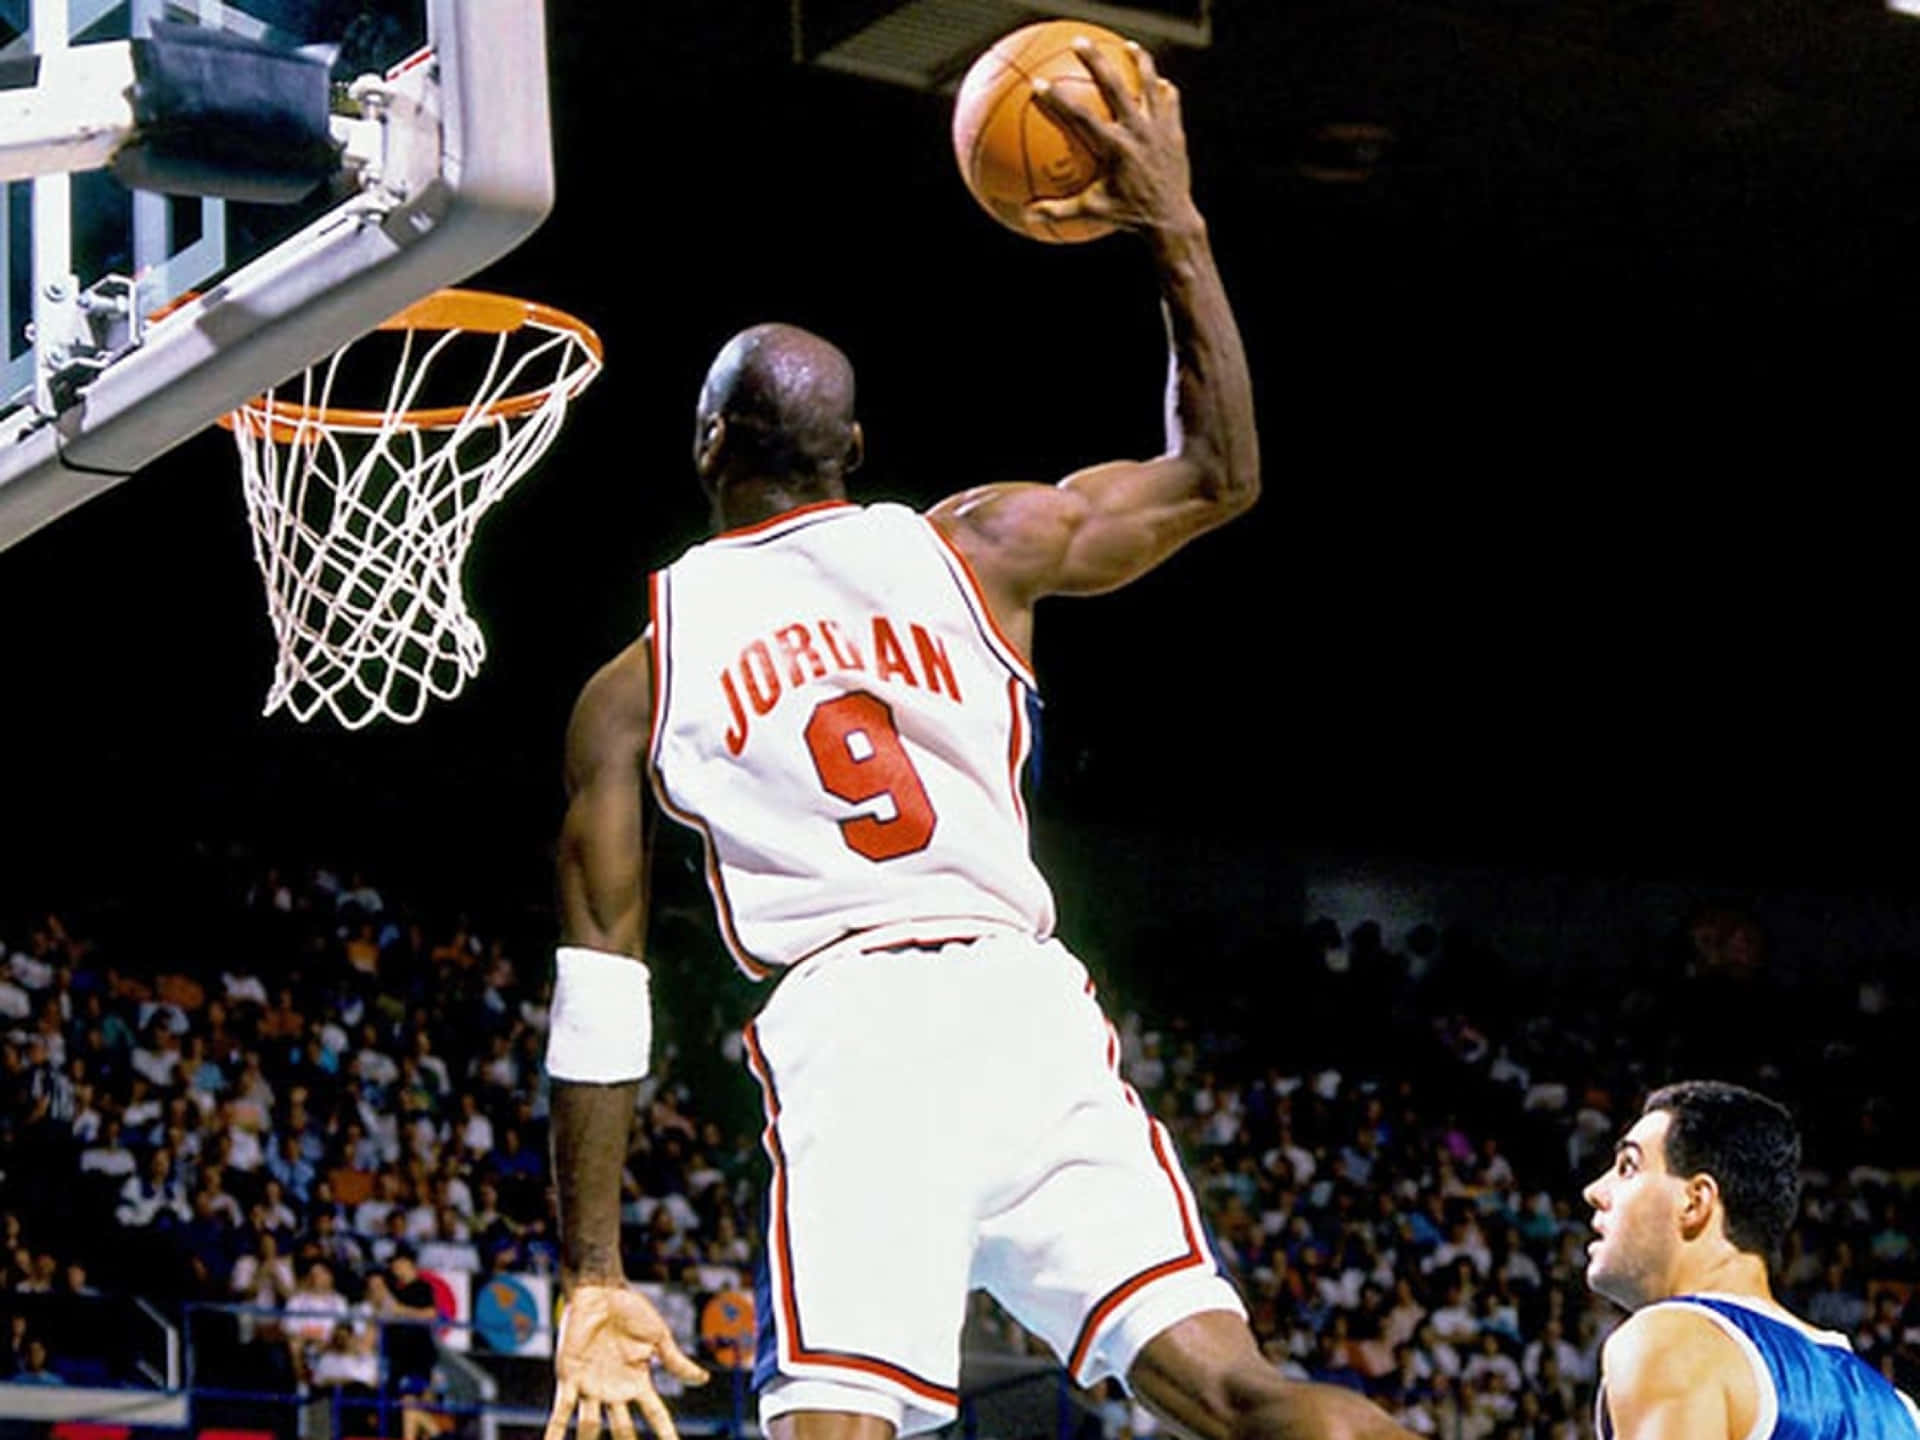 Siiispirato A Diventare Il Migliore Di Tutti Come Michael Jordan Con Questa Maglia Iconica. Sfondo